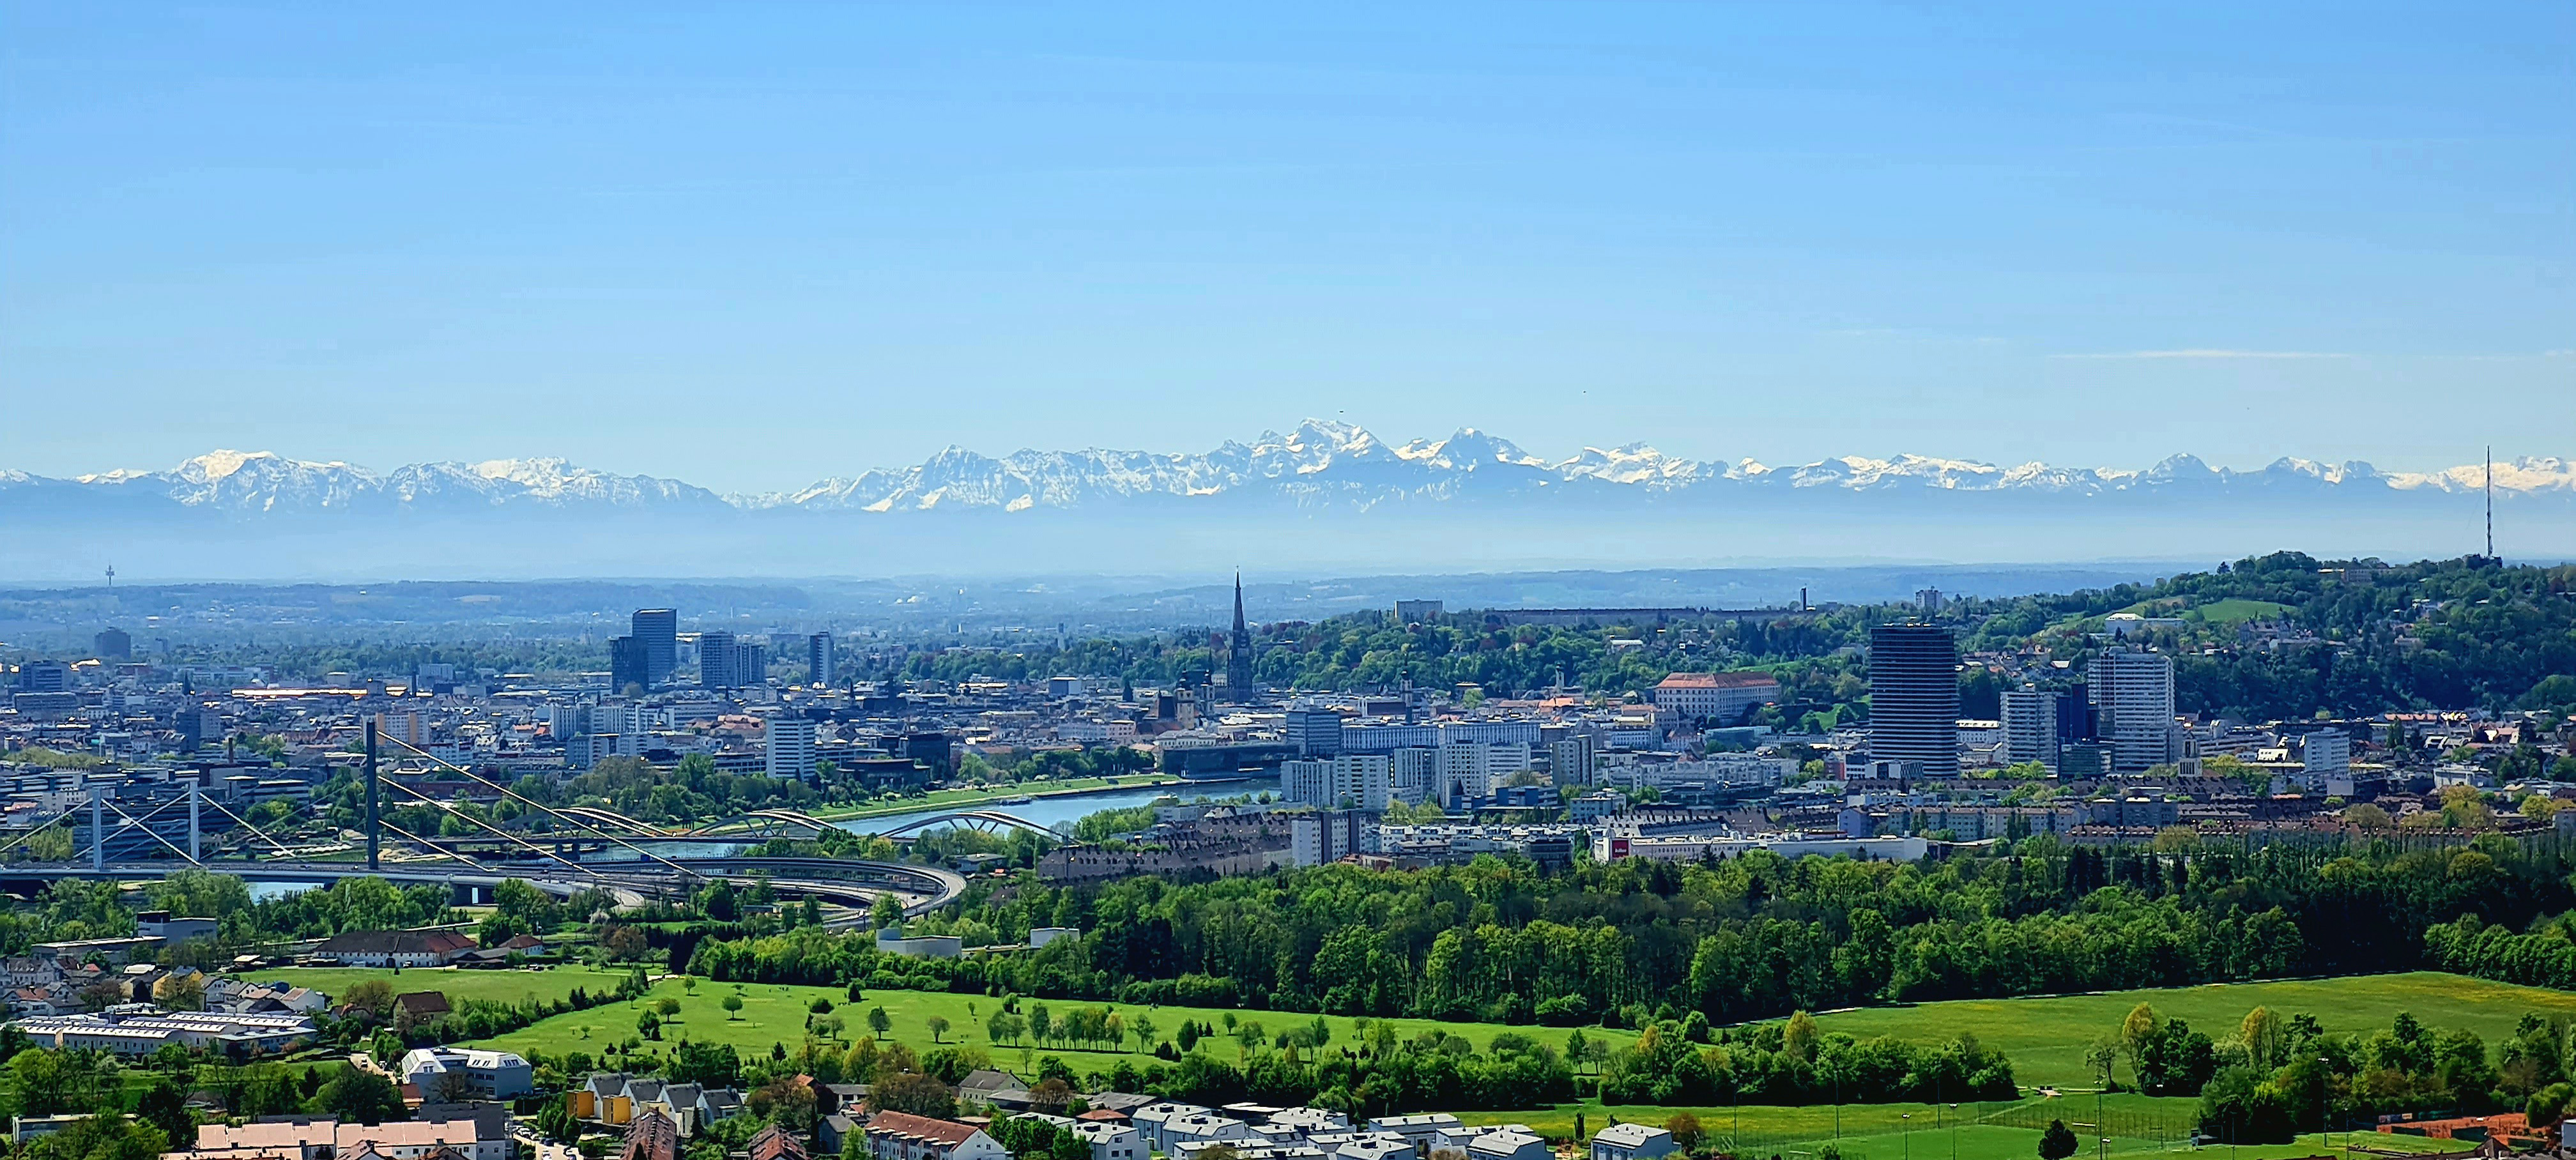 Panorama von Linz, Blickrichtung Südwesten. Im Hintergrund die [[Ostalpen